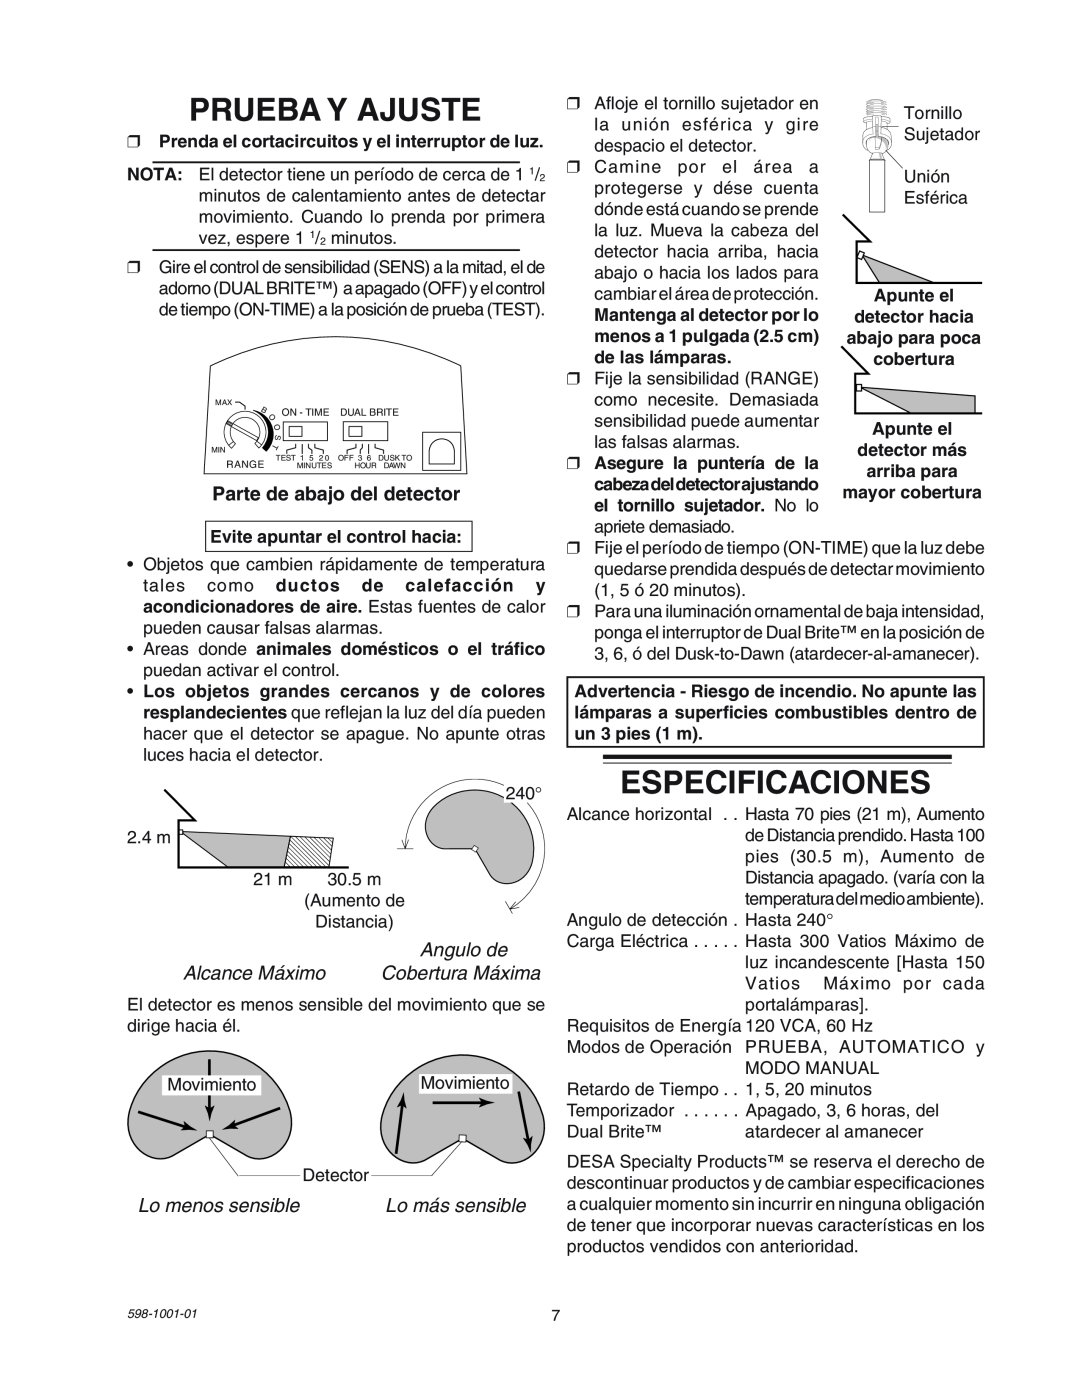 Heath Zenith SL-5318 manual Prueba Y Ajuste, Especificaciones, Parte de abajo del detector, Angulo de, Lo menos sensible 